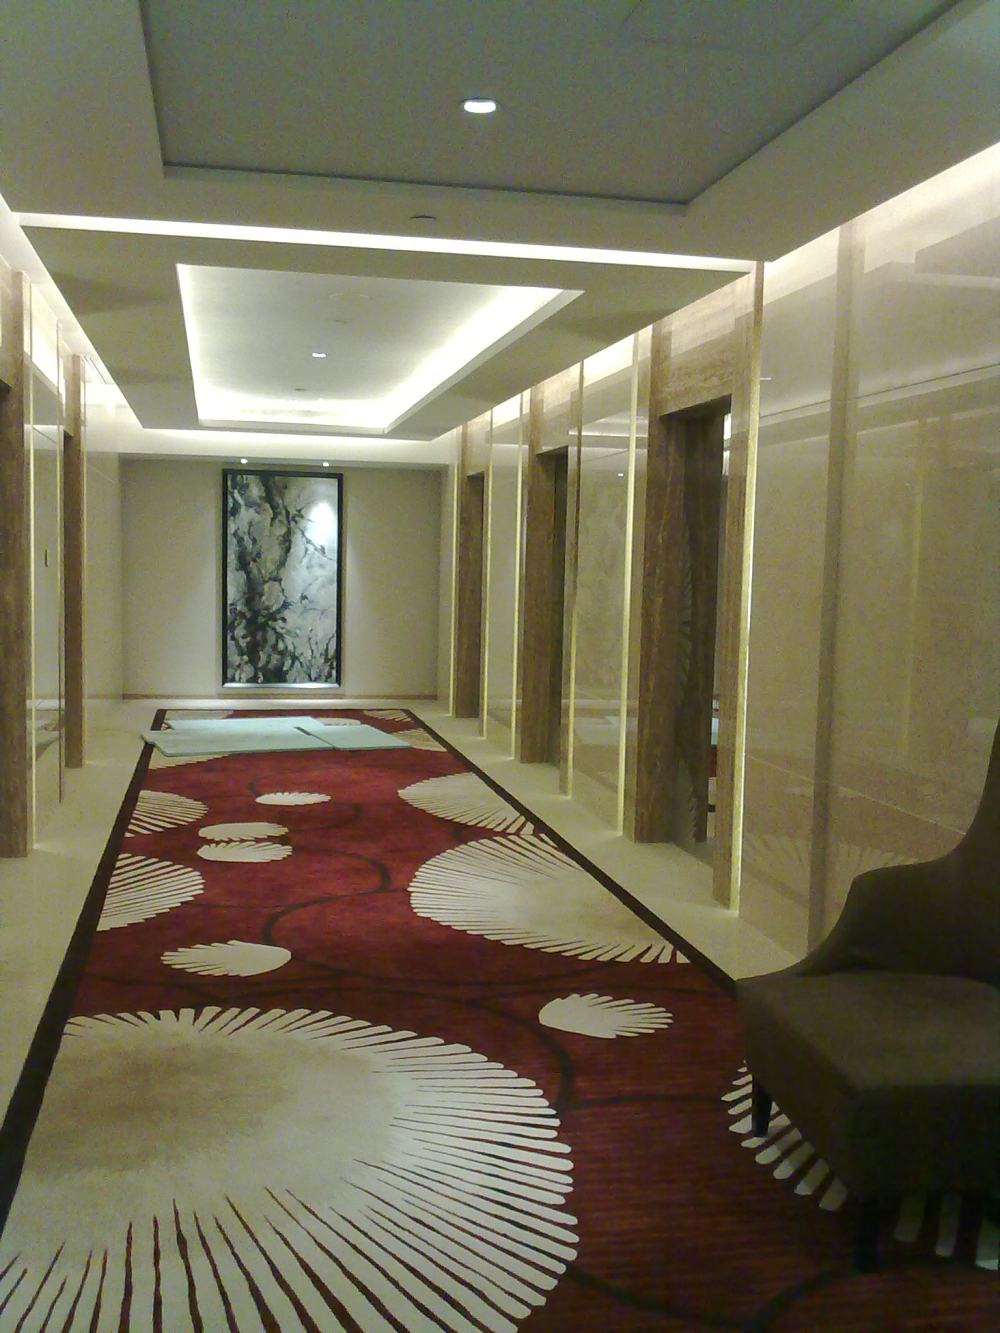 无锡万达喜来登酒店(Sheraton Wuxi Binhu Hotel )(LEO)_20091223010.jpg